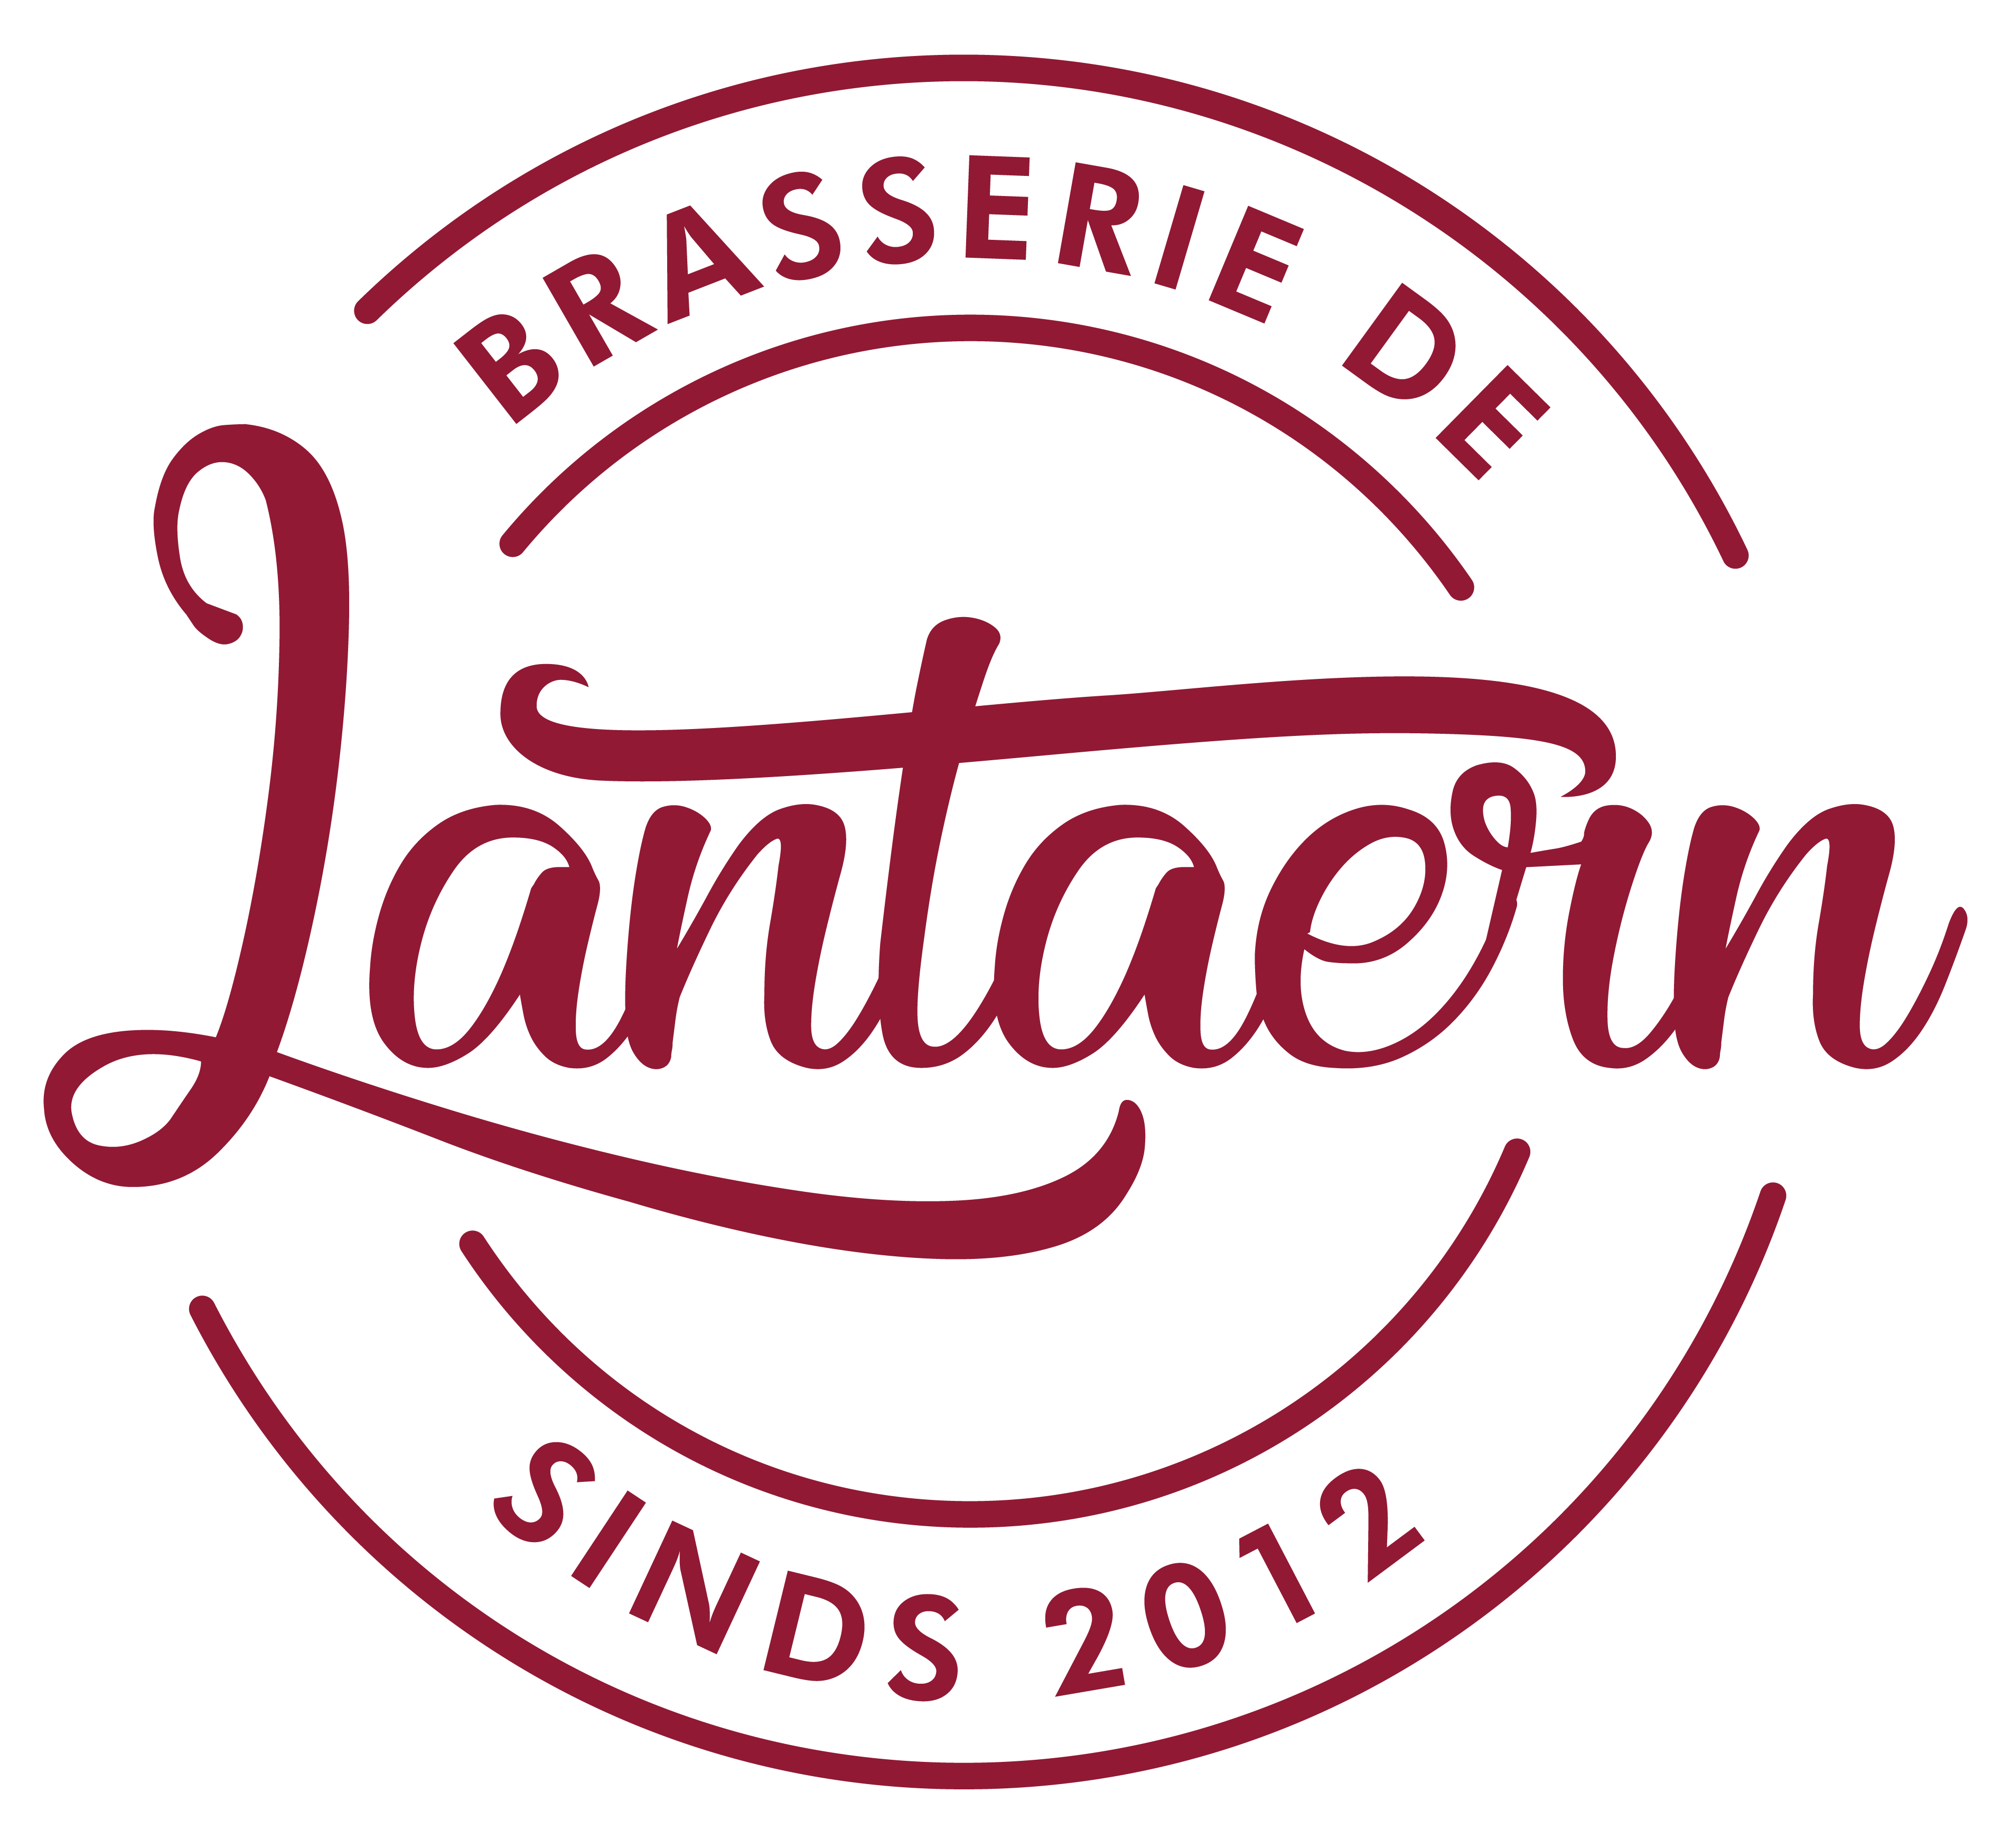 Brasserie de Lantaern